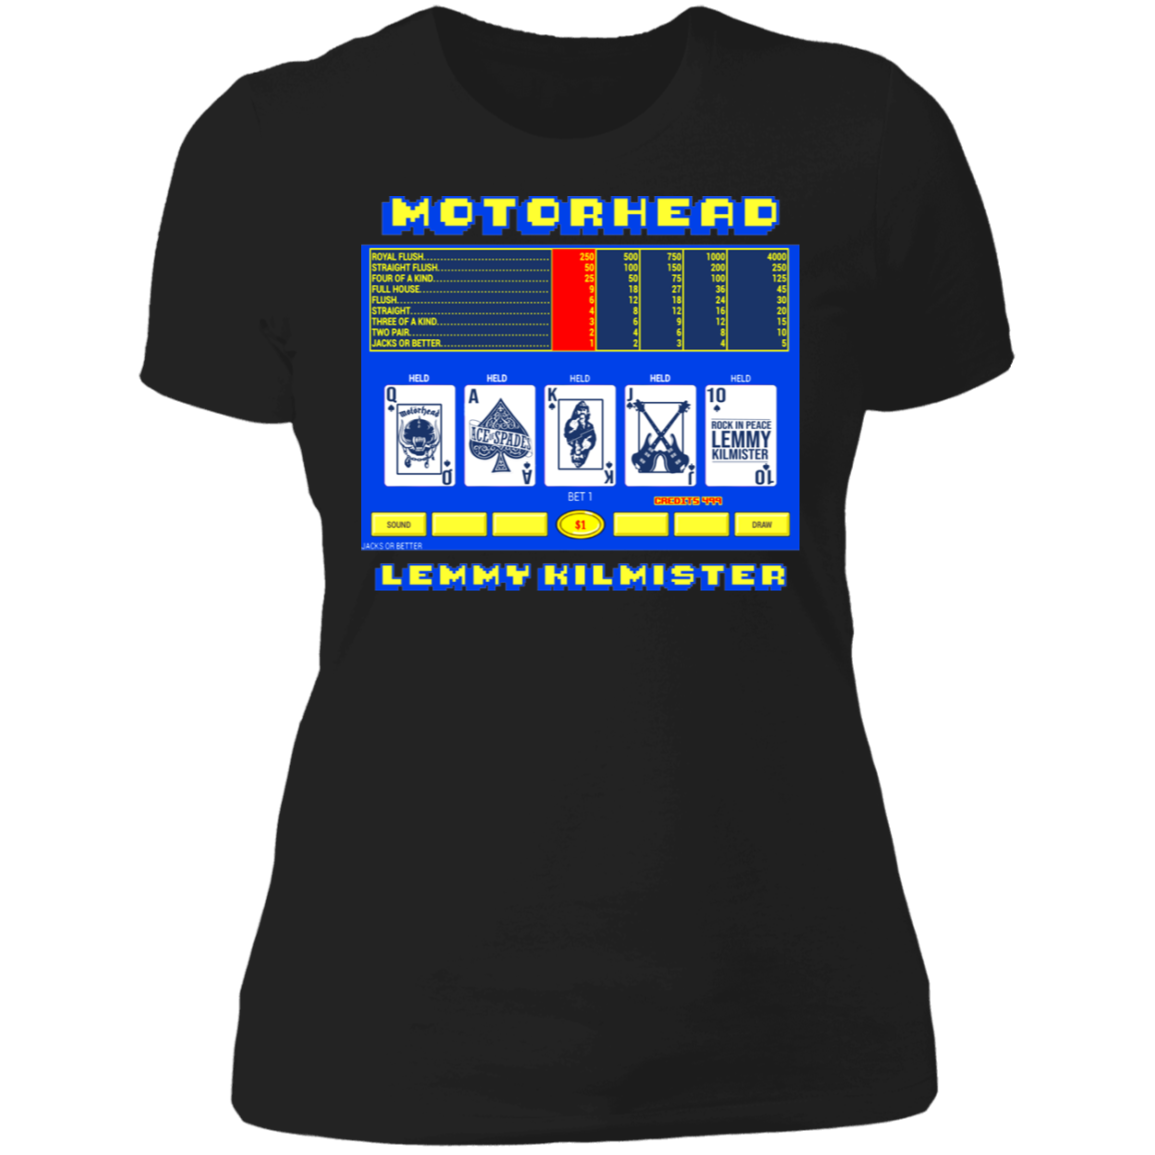 ArtichokeUSA Custom Design. Motorhead's Lemmy Kilmister's Favorite Video Poker Machine. Rock in Peace! Ladies' Boyfriend T-Shirt